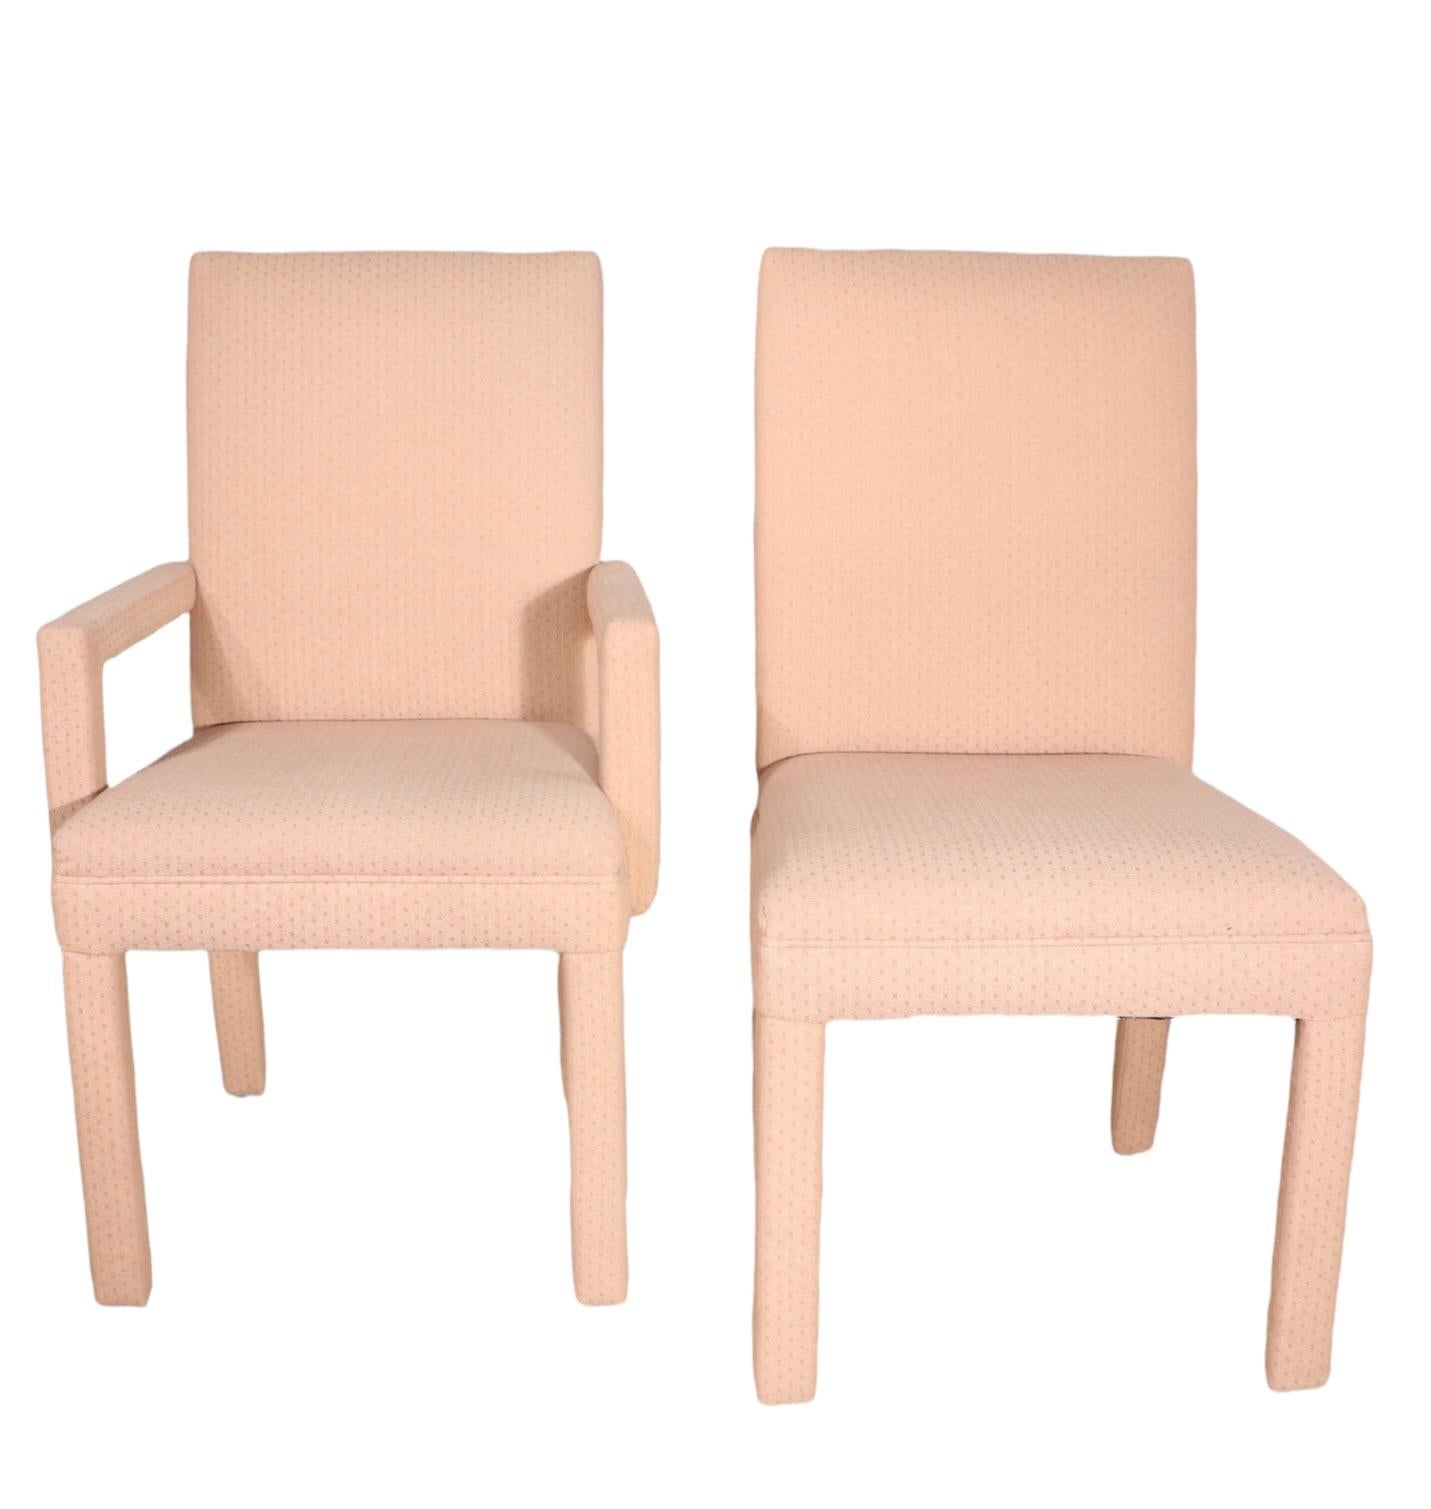 Ensemble chic de six chaises de salle à manger, en tissu texturé rose allover. L'ensemble comprend deux fauteuils et quatre chaises latérales. Tous sont en très bon état, propres, originaux et prêts à être utilisés. Les chaises sont vintage,